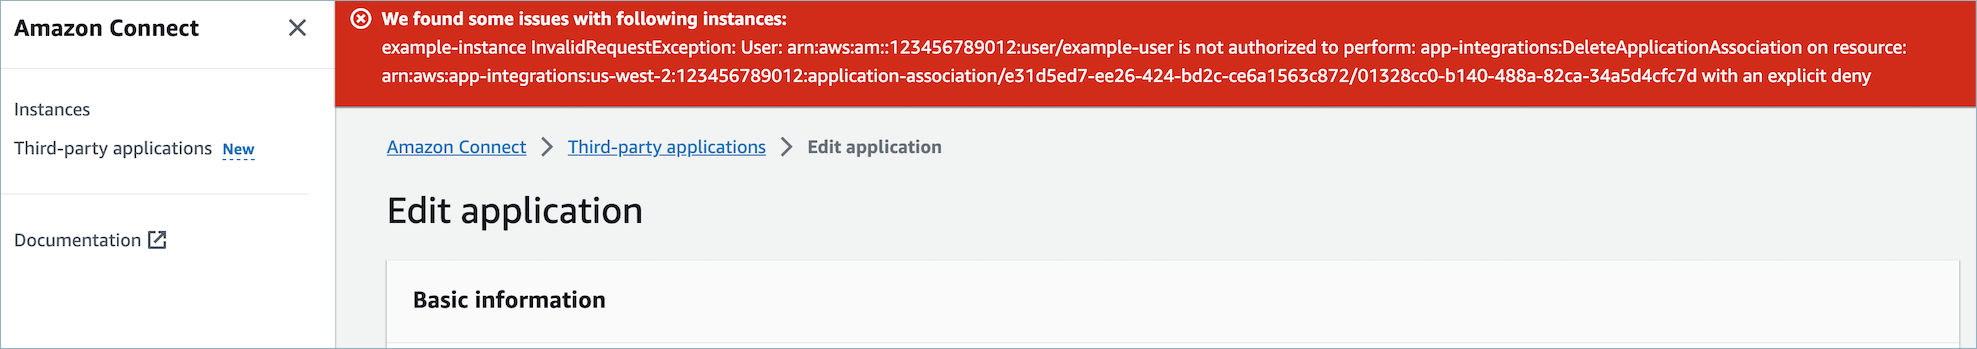 Kesalahan IAM saat mencoba menghapus aplikasi pihak ketiga karena izin yang tidak mencukupi